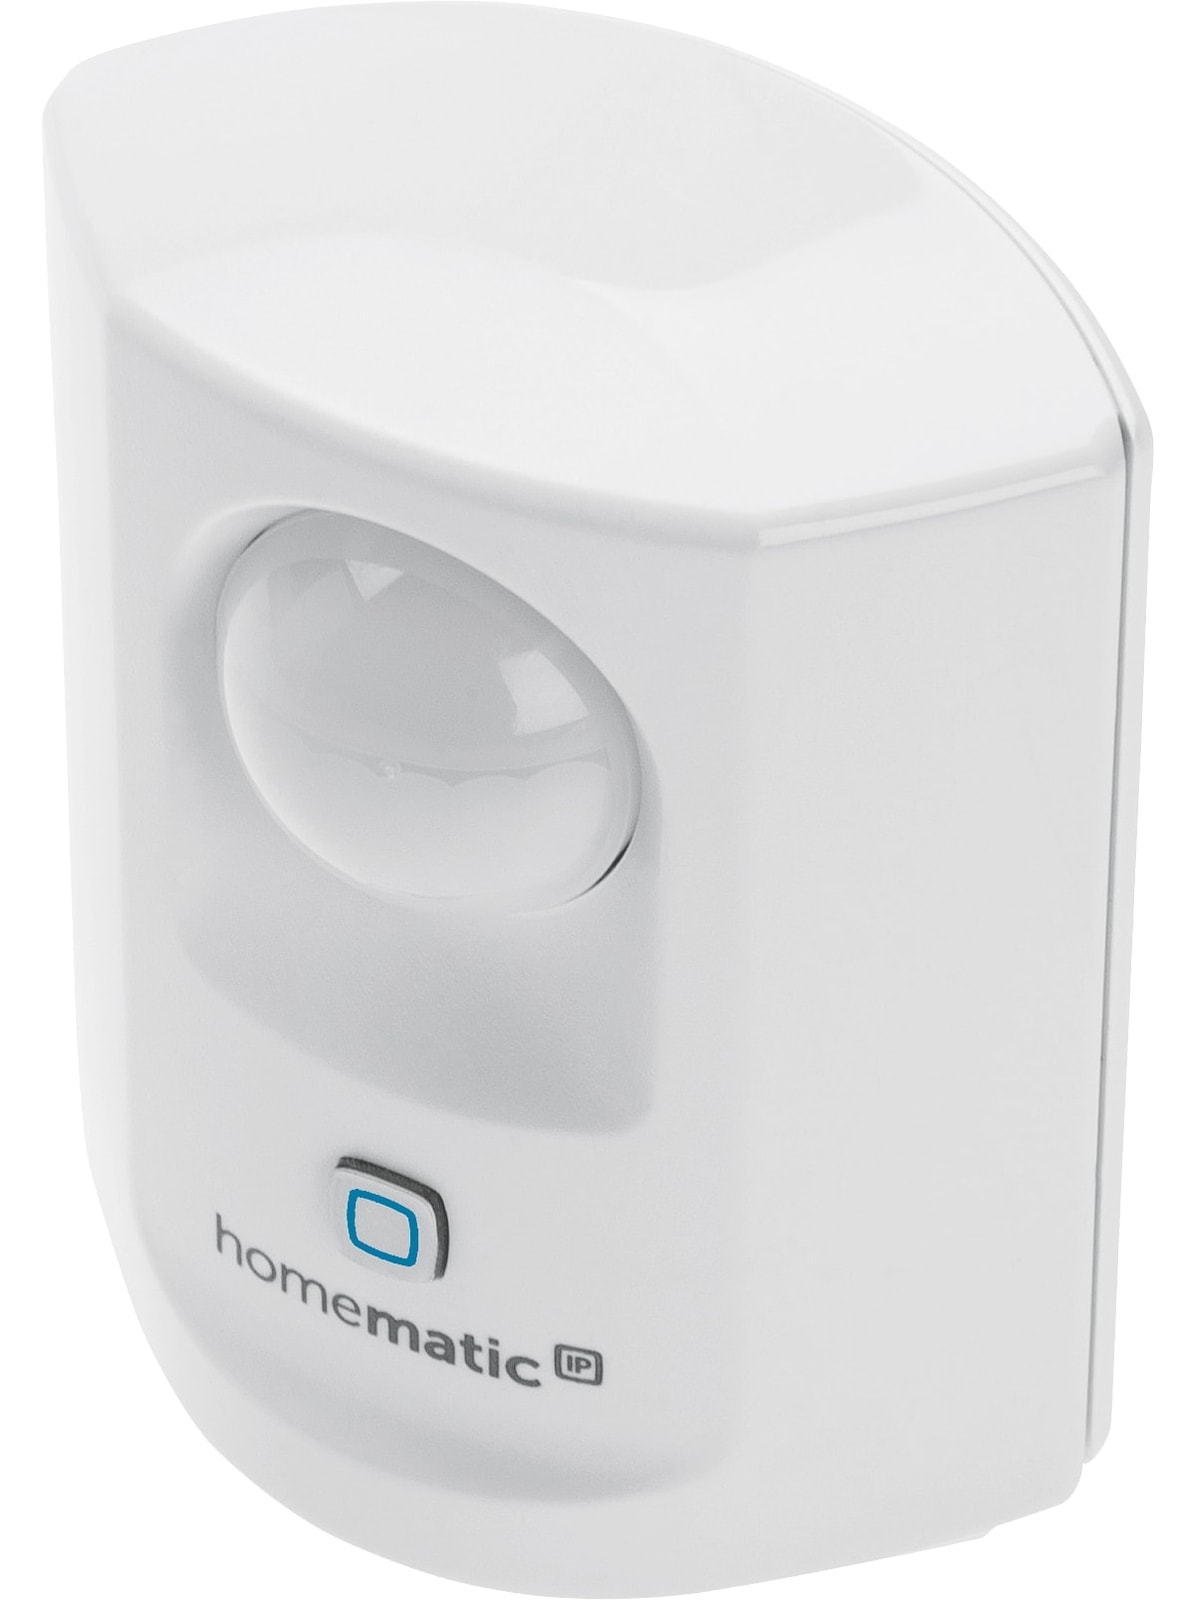 HOMEMATIC IP Smart Home 142722A0 Bewegungsmelder, weiß von Homematic IP